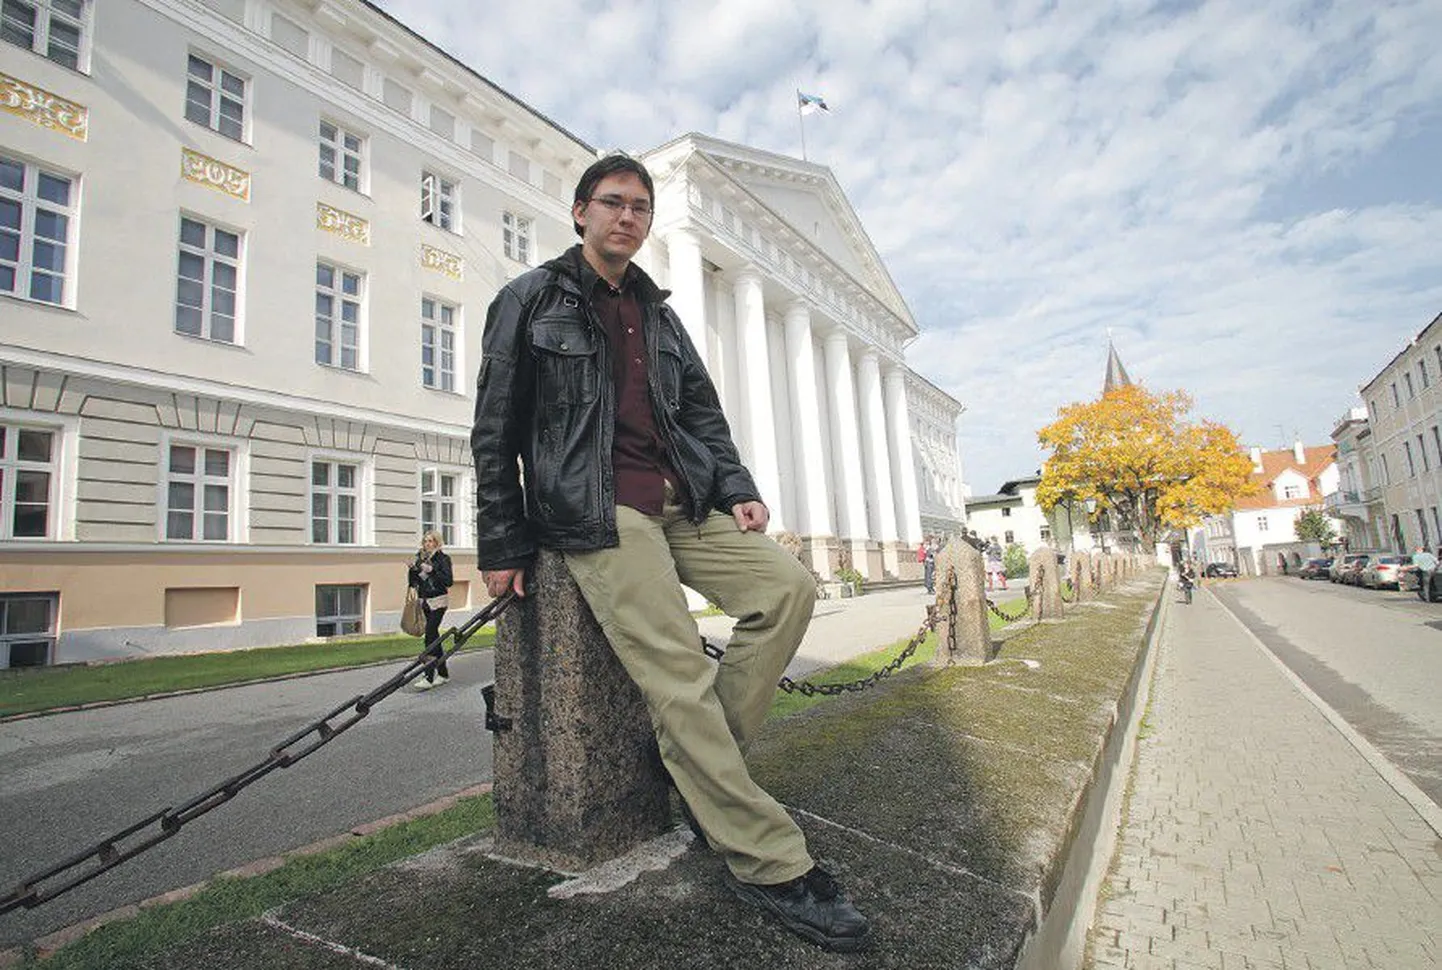 Мартин Киротар учится в магистратуре Тартуского университета, но, несмотря на это, банк настаивает на выплате учебного кредита.